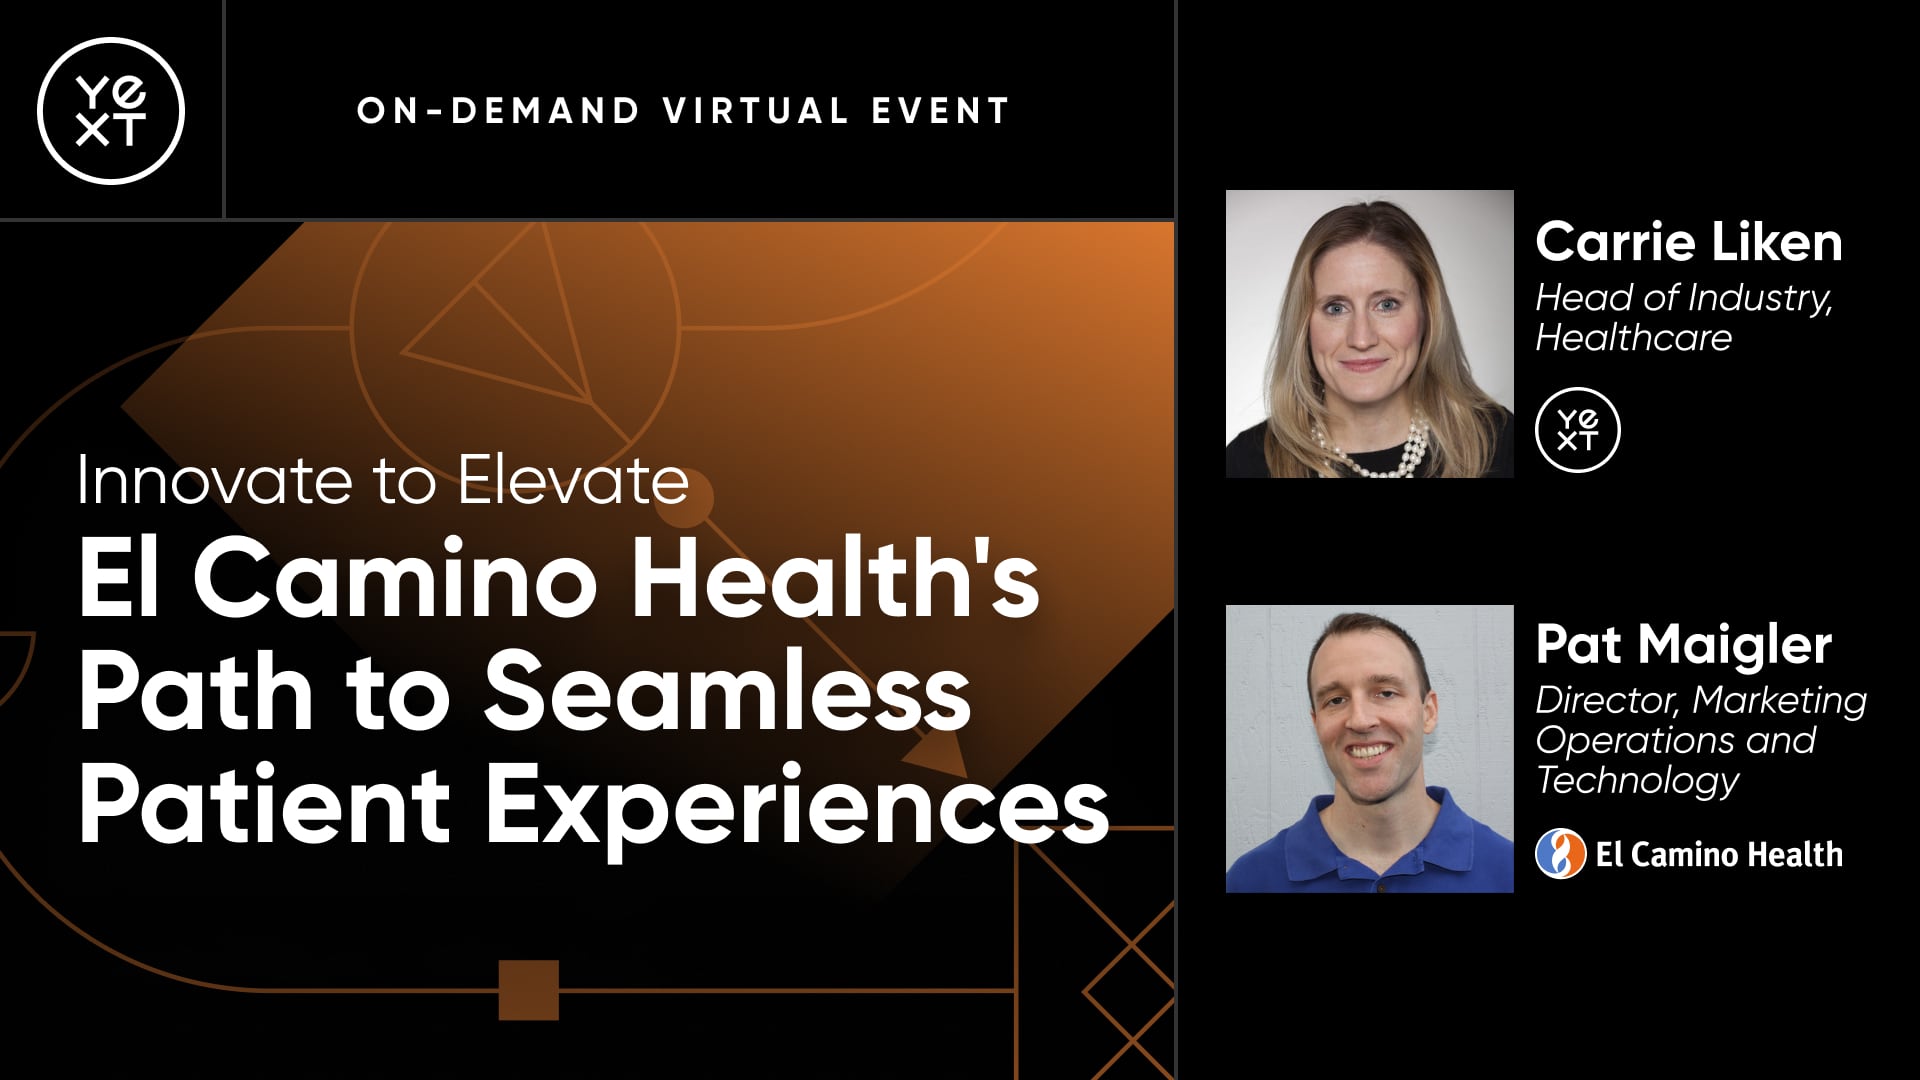 El Camino Health's Path to Seamless Patient Experiences Yext webinar.